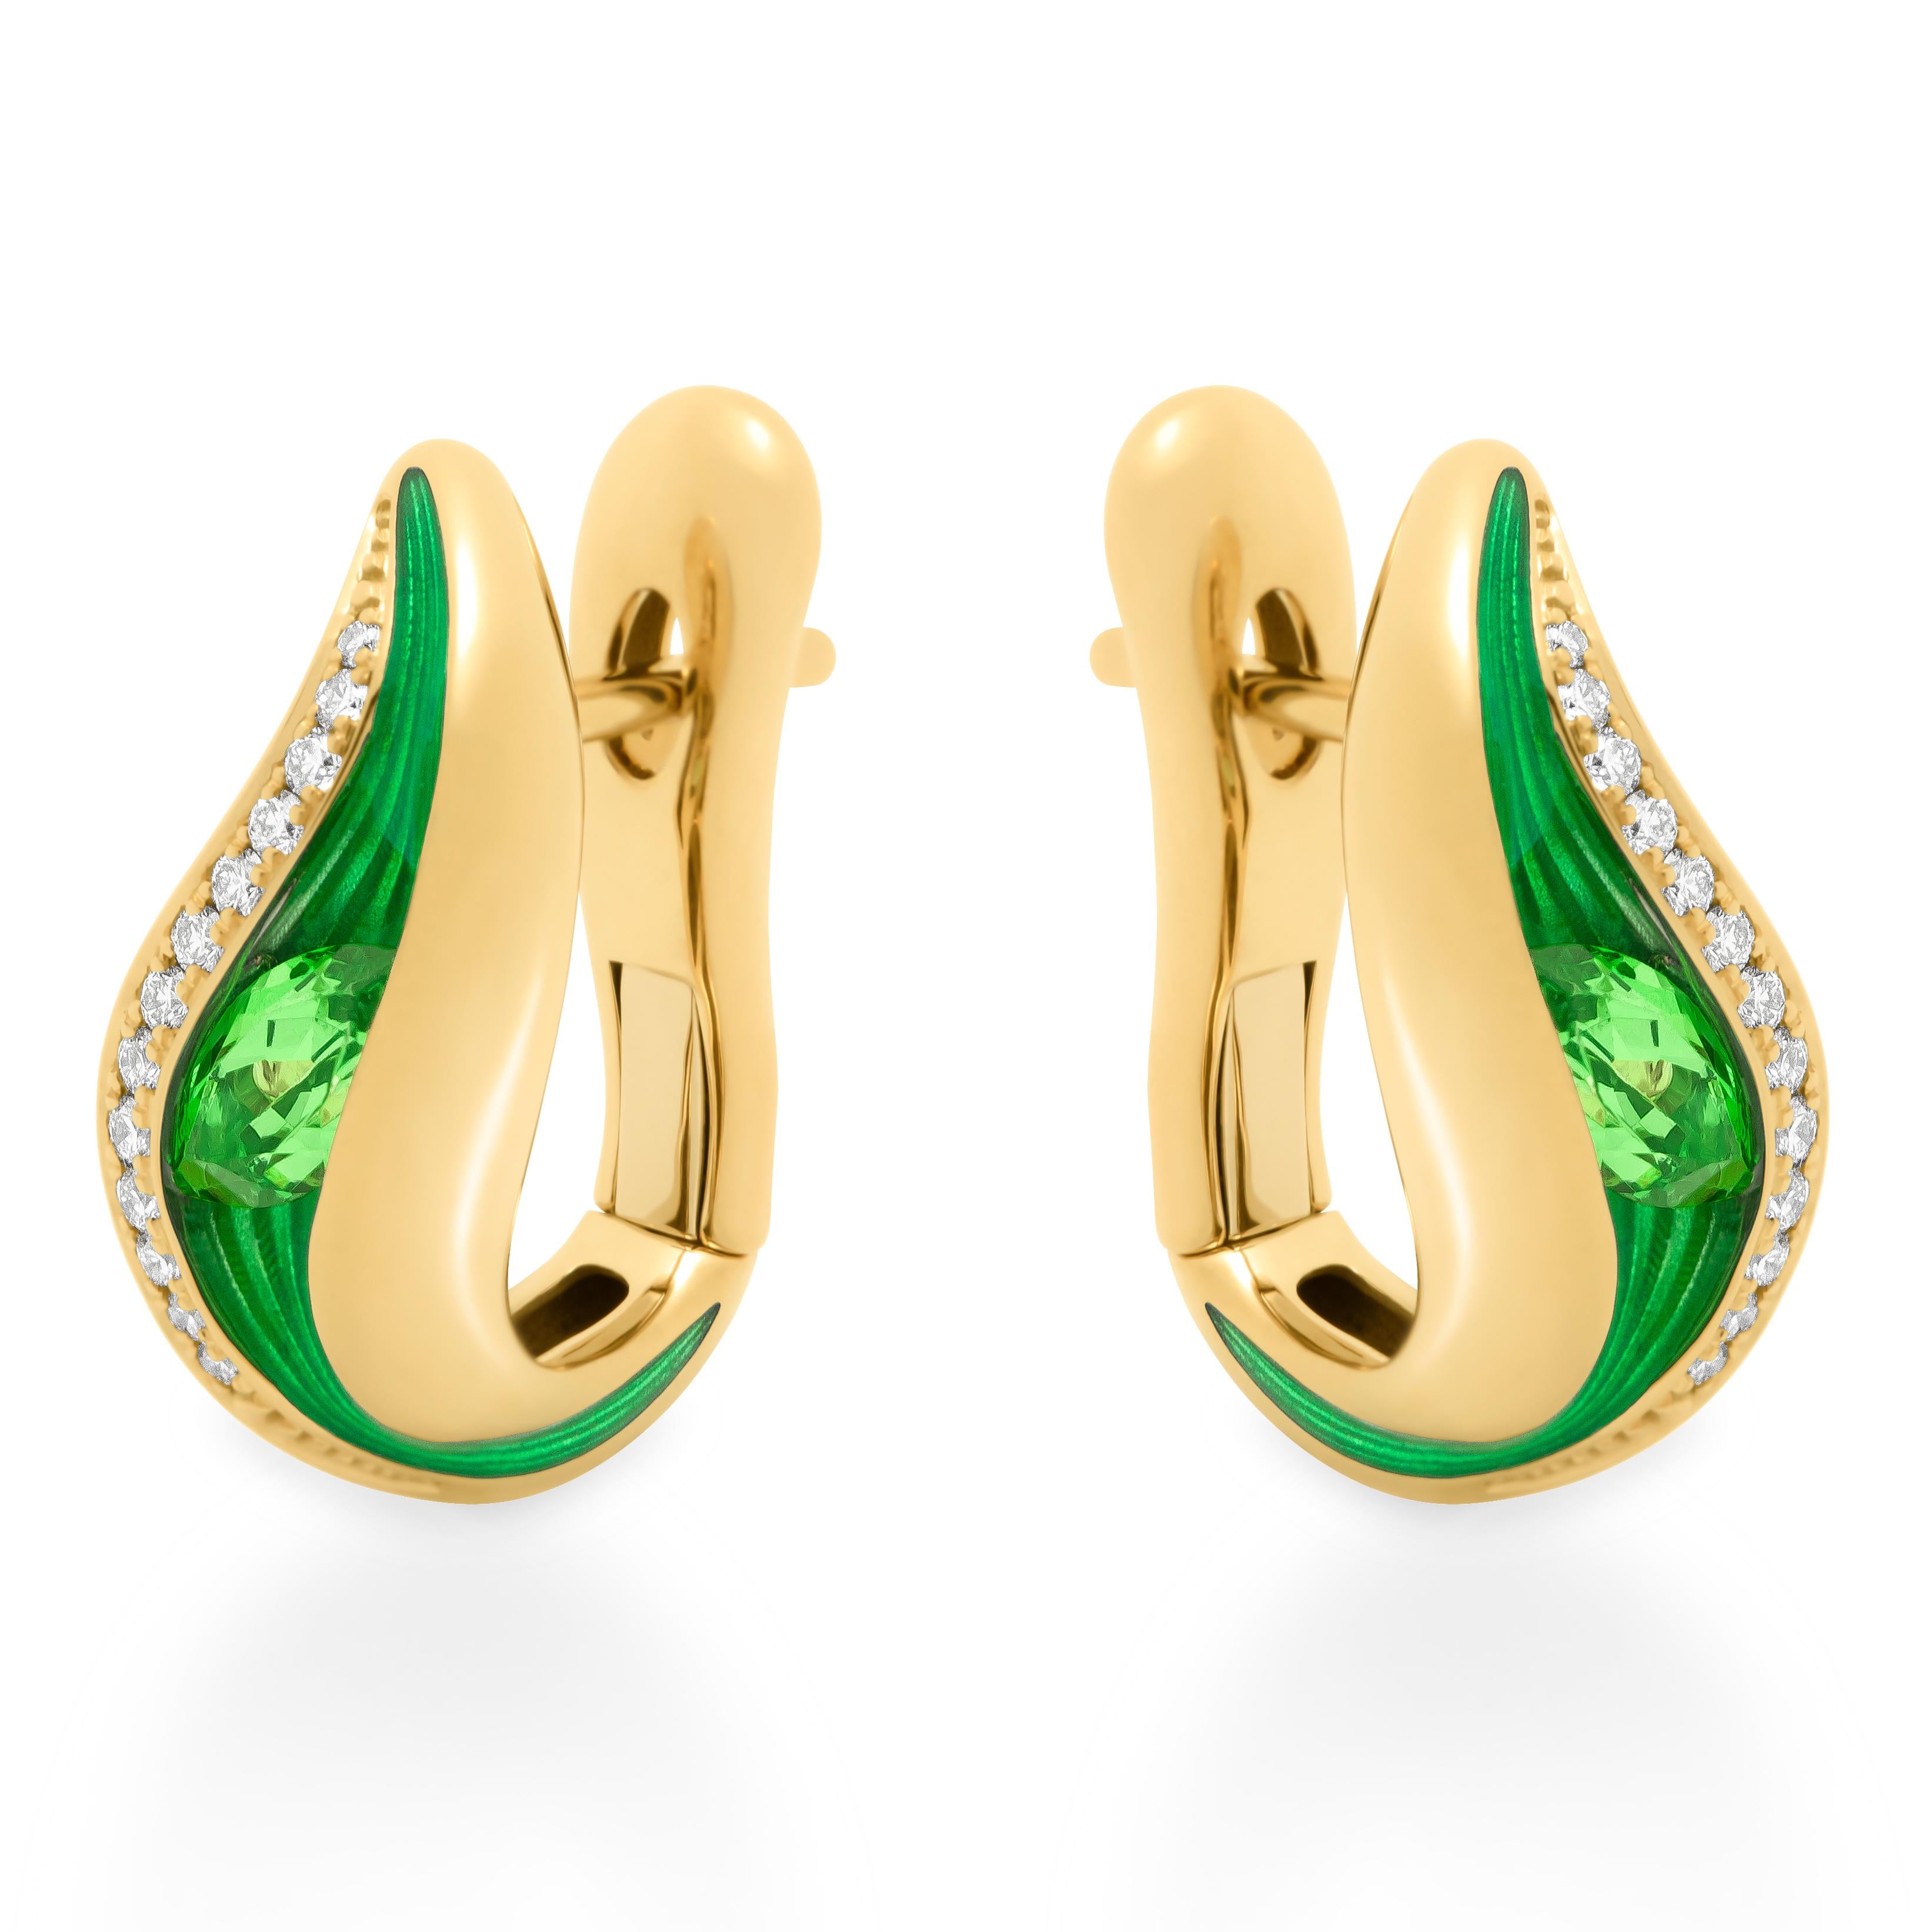 Boucles d'oreilles Tsavorite 0.56 Carat Diamants Enamel Or Jaune 18 Karat Couleurs Fondues
Notre nouvelle collection 